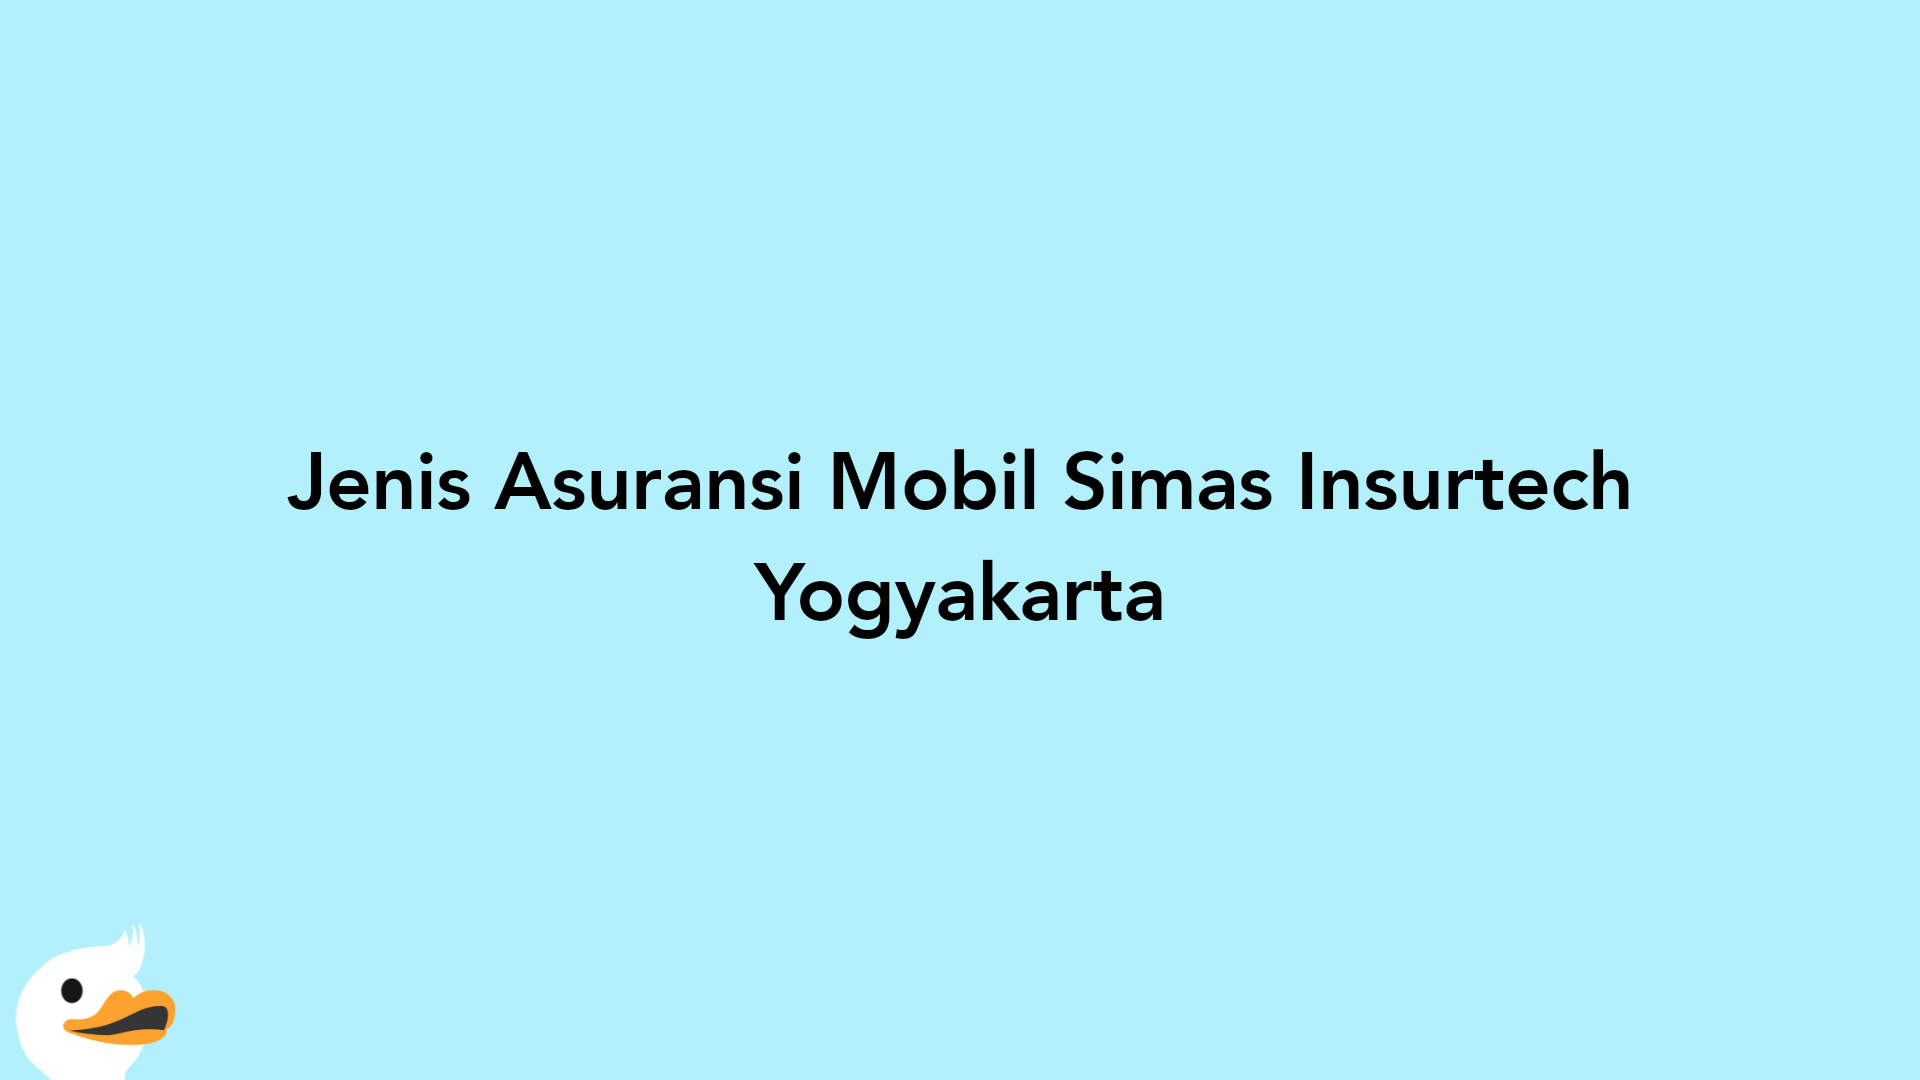 Jenis Asuransi Mobil Simas Insurtech Yogyakarta